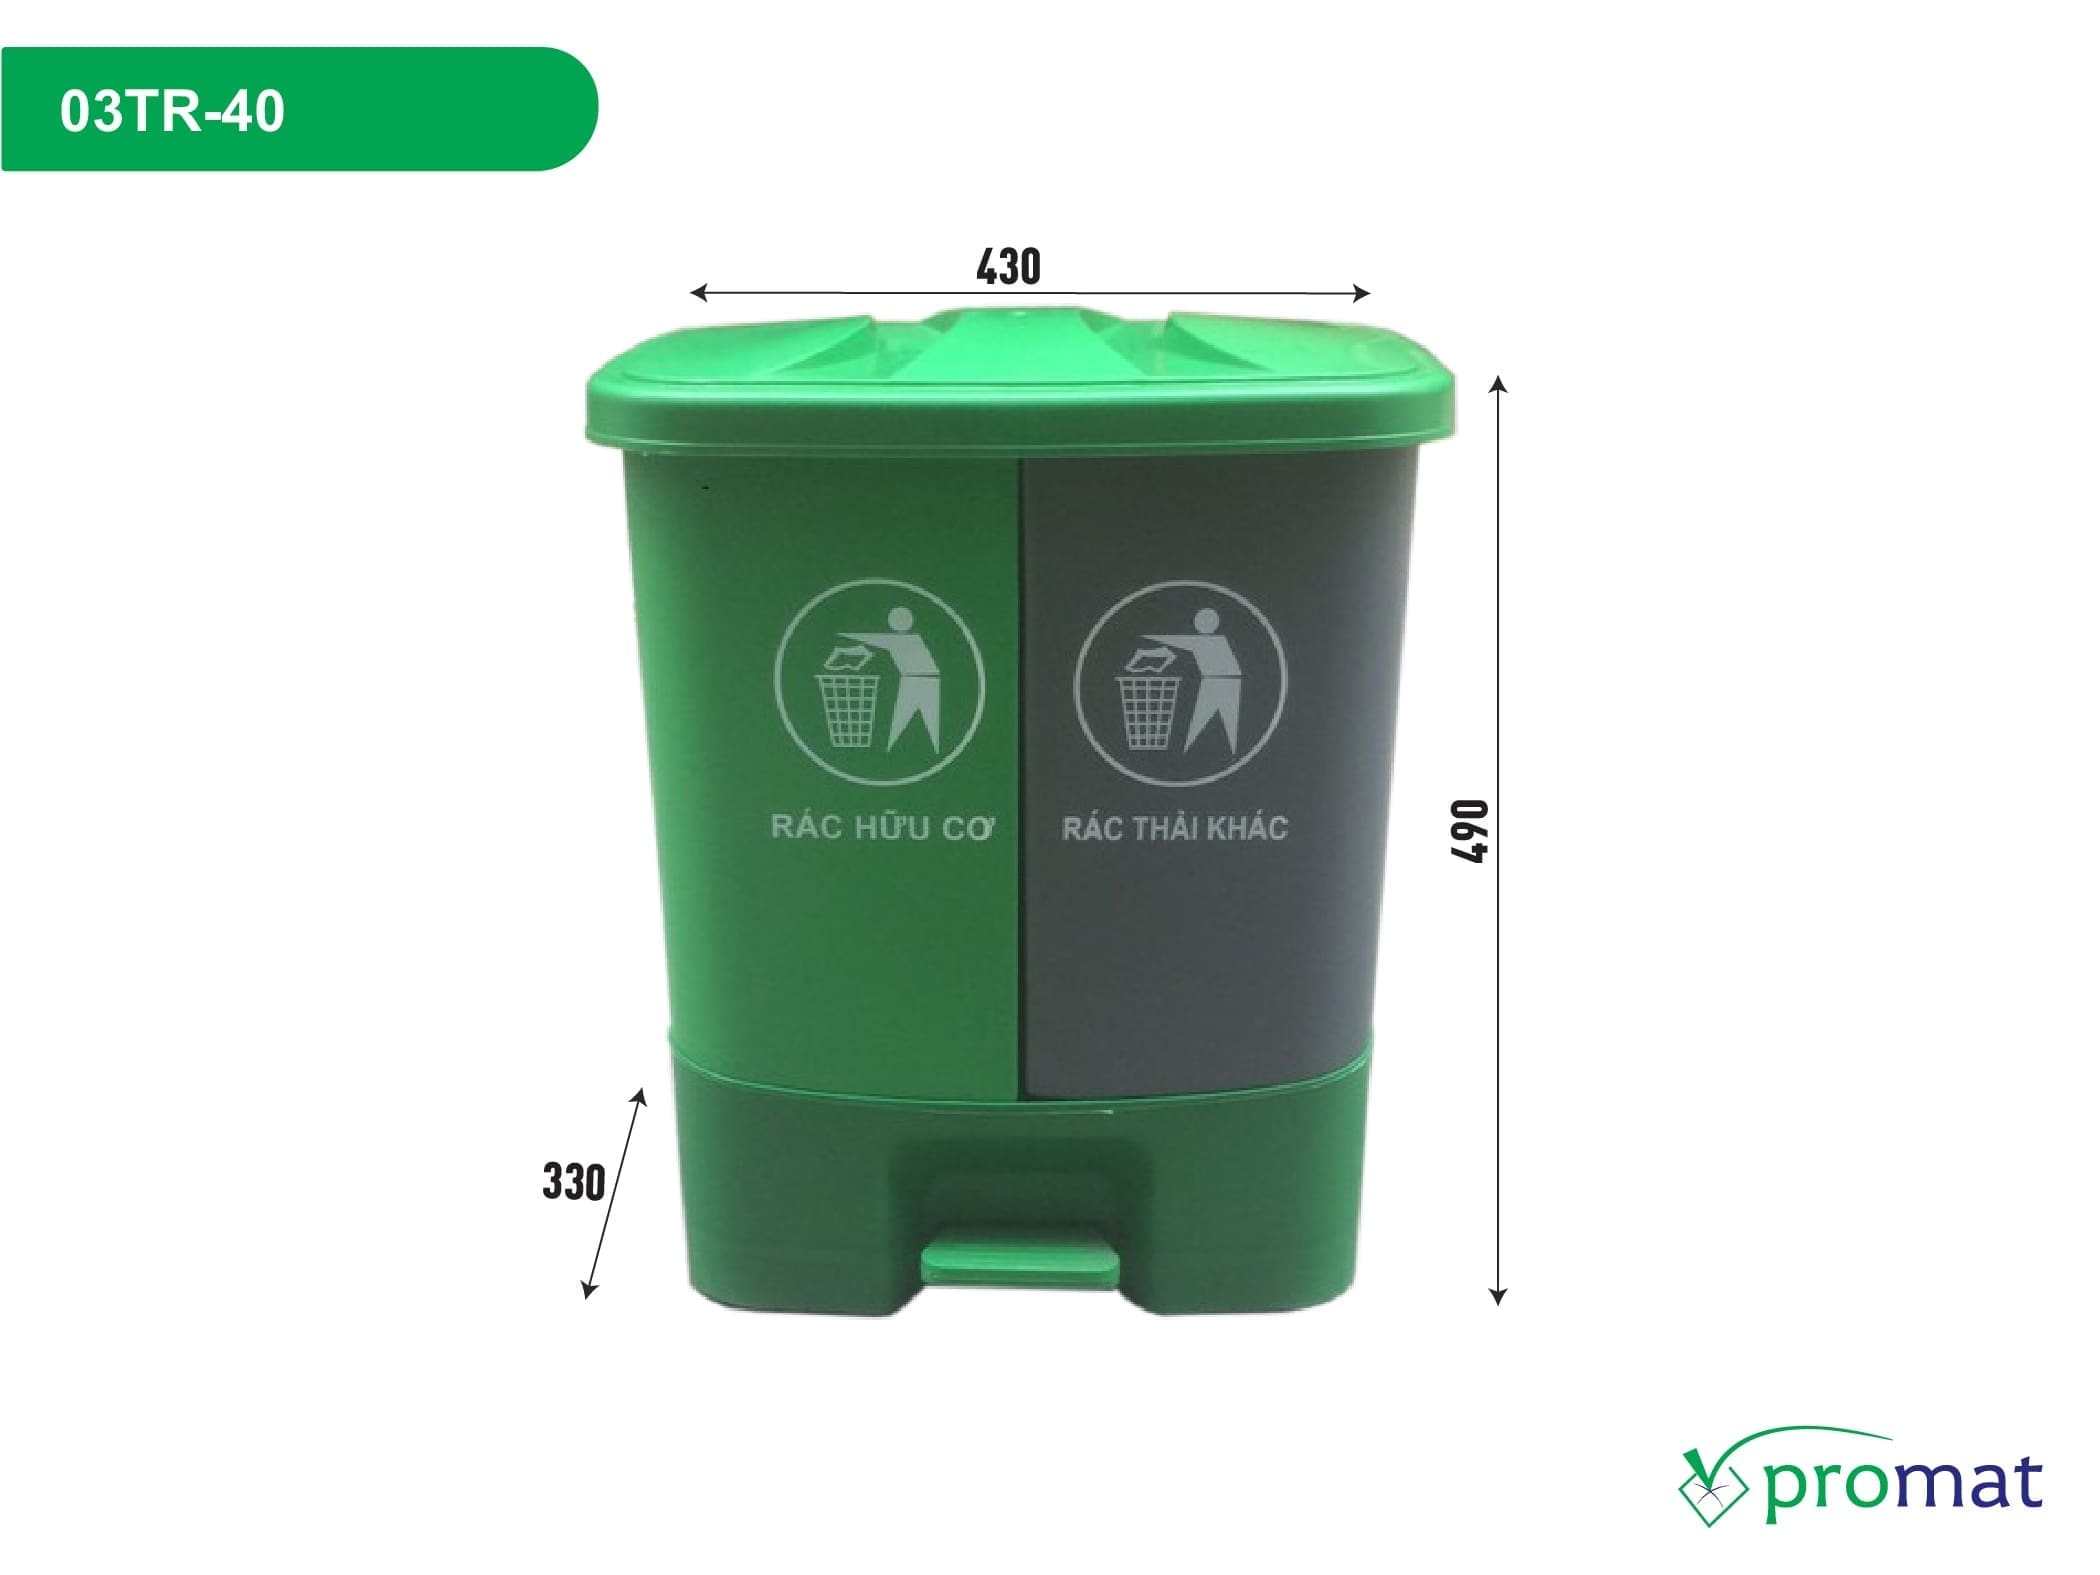 thùng rác nhựa 2 ngăn 40 lít 430x330x490mm 03TR-40; thùng rác nhựa 2 ngăn 430x330x490mm; thùng rác nhựa 2 ngăn 40 lít 03TR-40; thùng rác nhựa 2 ngăn 40 lít 430x330x490mm; mua thùng rác nhựa 2 ngăn; giá thùng rác nhựa 2 ngăn; thùng rác nhựa 2 ngăn giá rẻ; mua thùng rác nhựa 2 ngăn; giá thùng rác nhựa 2 ngăn; thùng rác nhựa 2 ngăn giá rẻ; mua thùng rác nhựa 2 ngăn; giá thùng rác nhựa; thùng rác nhựa giá rẻ; thùng rác nhựa 2 ngăn chất lượng; thùng rác nhựa chất lượng; thùng rác nhựa 2 ngăn 03TR-40; thùng rác nhựa 2 ngăn 430x330x490mm; thùng rác nhựa 2 ngăn 40 lít; thùng rác nhựa 2 ngăn; thùng rác nhựa 2 ngăn tại hcm; thùng rác nhựa 2 ngăn tại hà nội; thùng rác nhựa 2 ngăn tại đà nẵng; thùng rác nhựa 2 ngăn tại hcm; thùng rác nhựa 2 ngăn tại hà nội; thùng rác nhựa 2 ngăn tại đà nẵng; thùng rác nhựa tại hcm; thùng rác nhựa tại hà nội; thùng rác nhựa tại đà nẵng; thùng rác nhựa 2 ngăn promat; thùng rác nhựa 2 ngăn promat; thùng rác nhựa promat; promat vietnam; promat.com.vn; promat; professional material supplier; công ty promat;